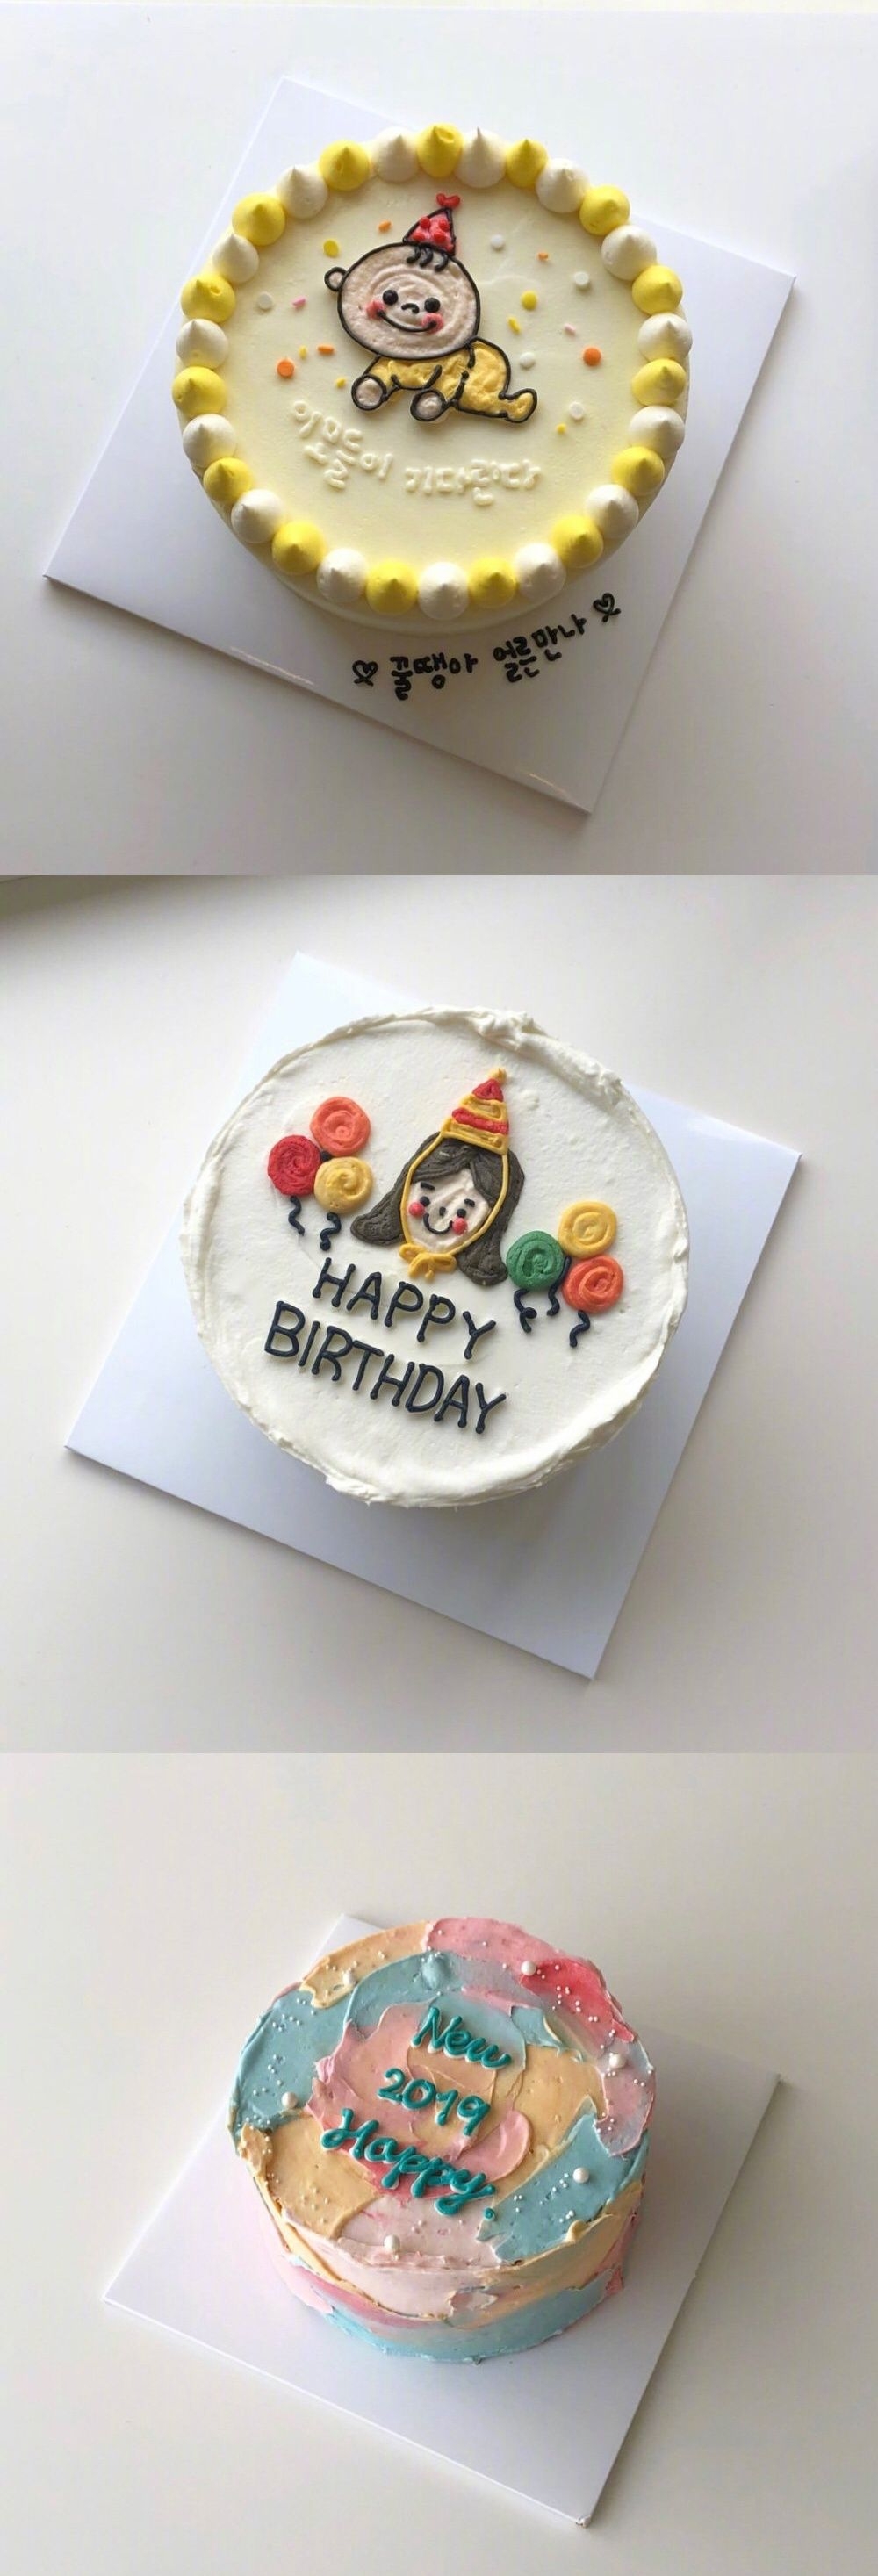 简约ins网红风的生日蛋糕制作技巧图片